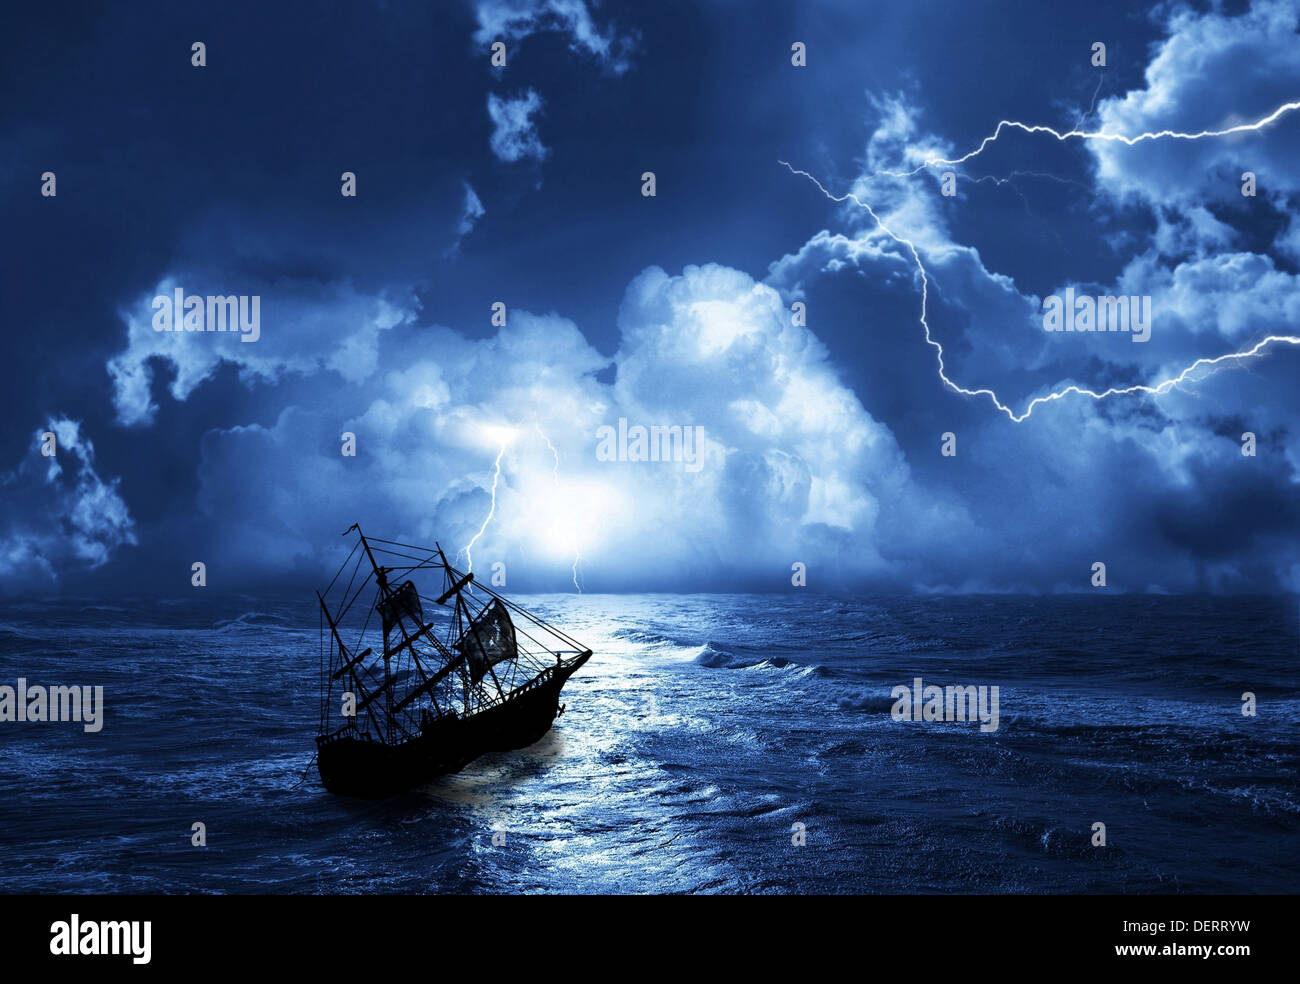 La voile de navire en temps de tempête avec des éclairs Banque D'Images